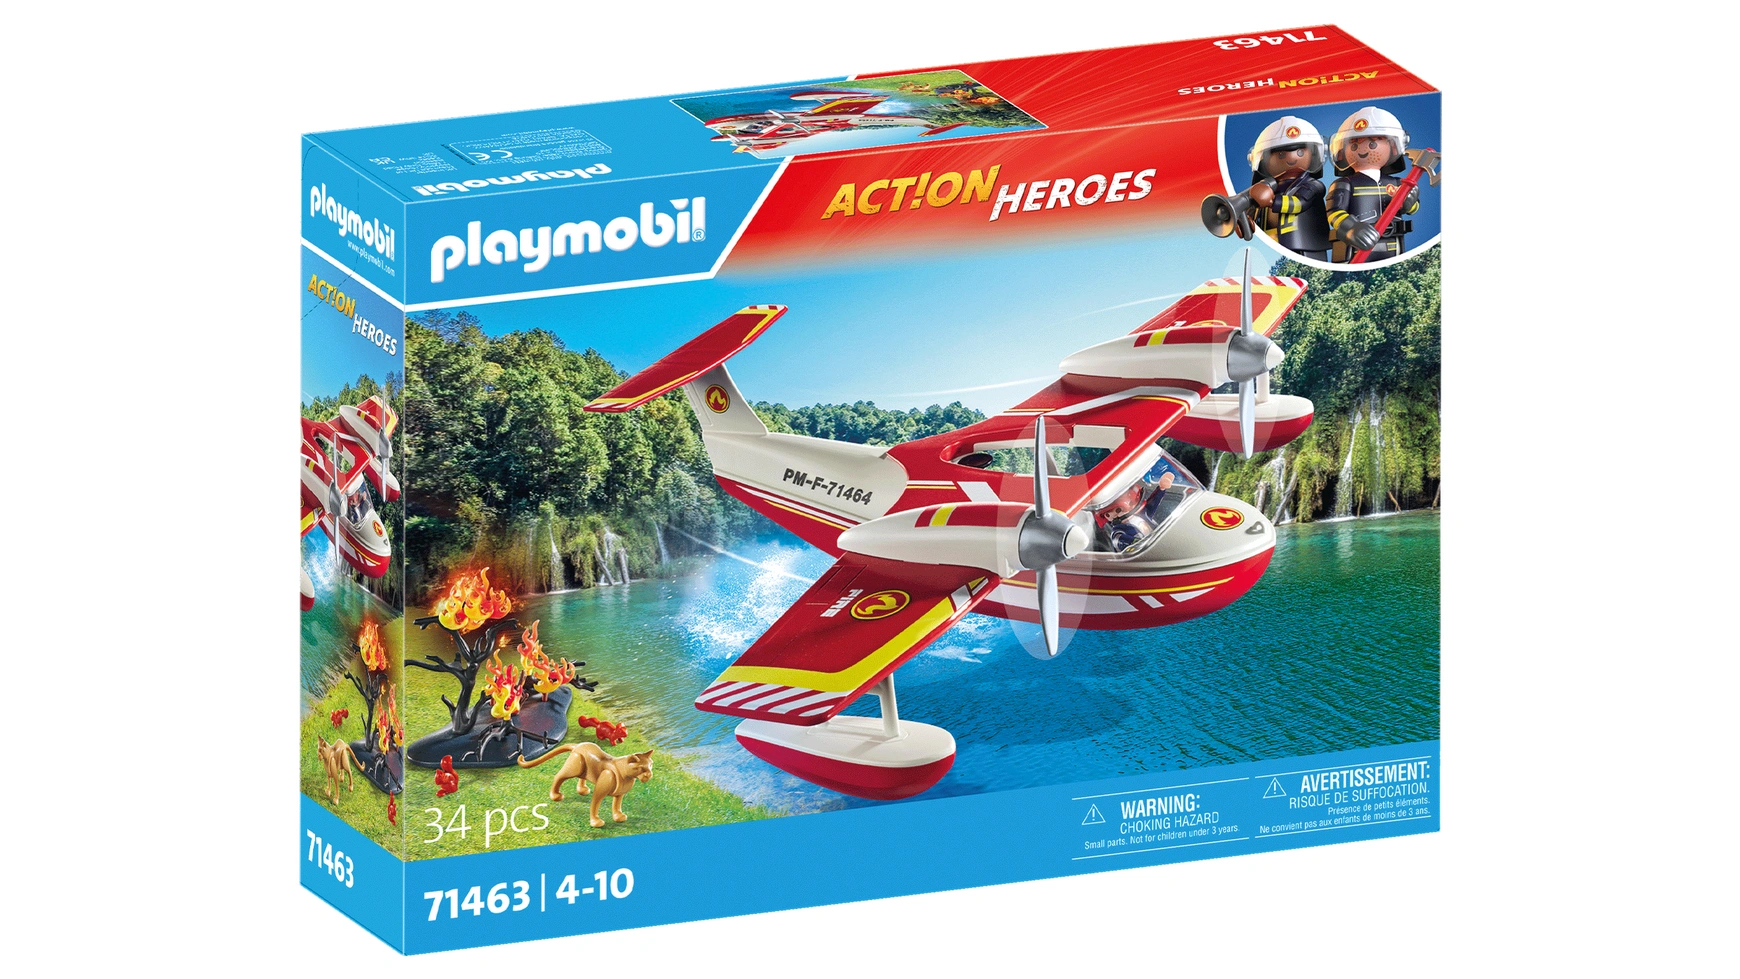 аттракцион playmobil сбей банки Action heroes пожарный самолет с функцией тушения Playmobil